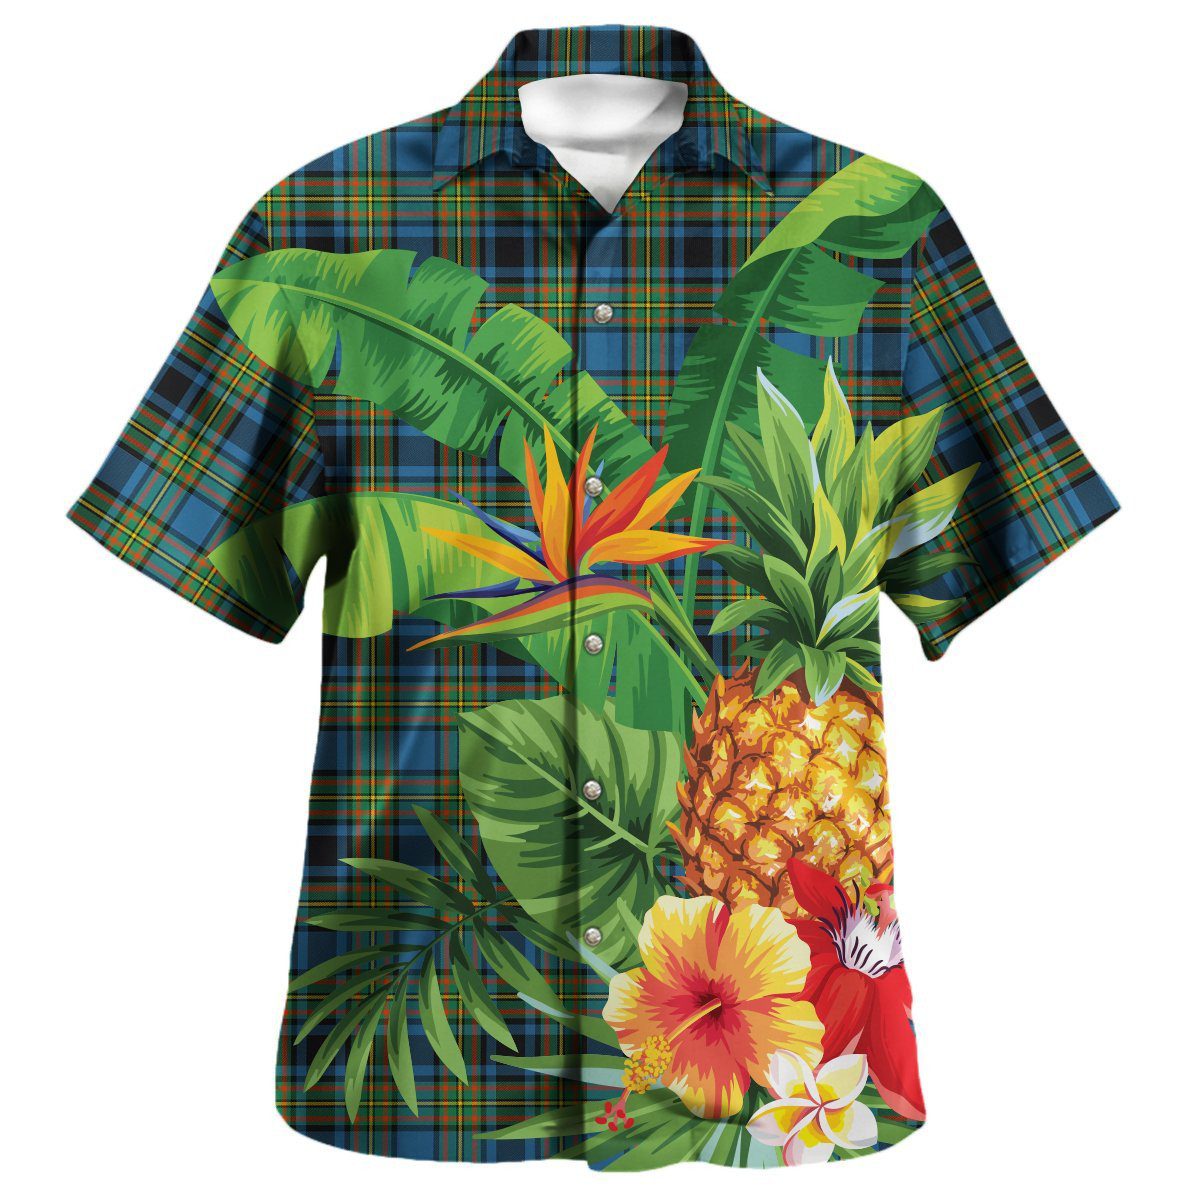 Gillies Ancient Tartan Aloha Shirt version 2